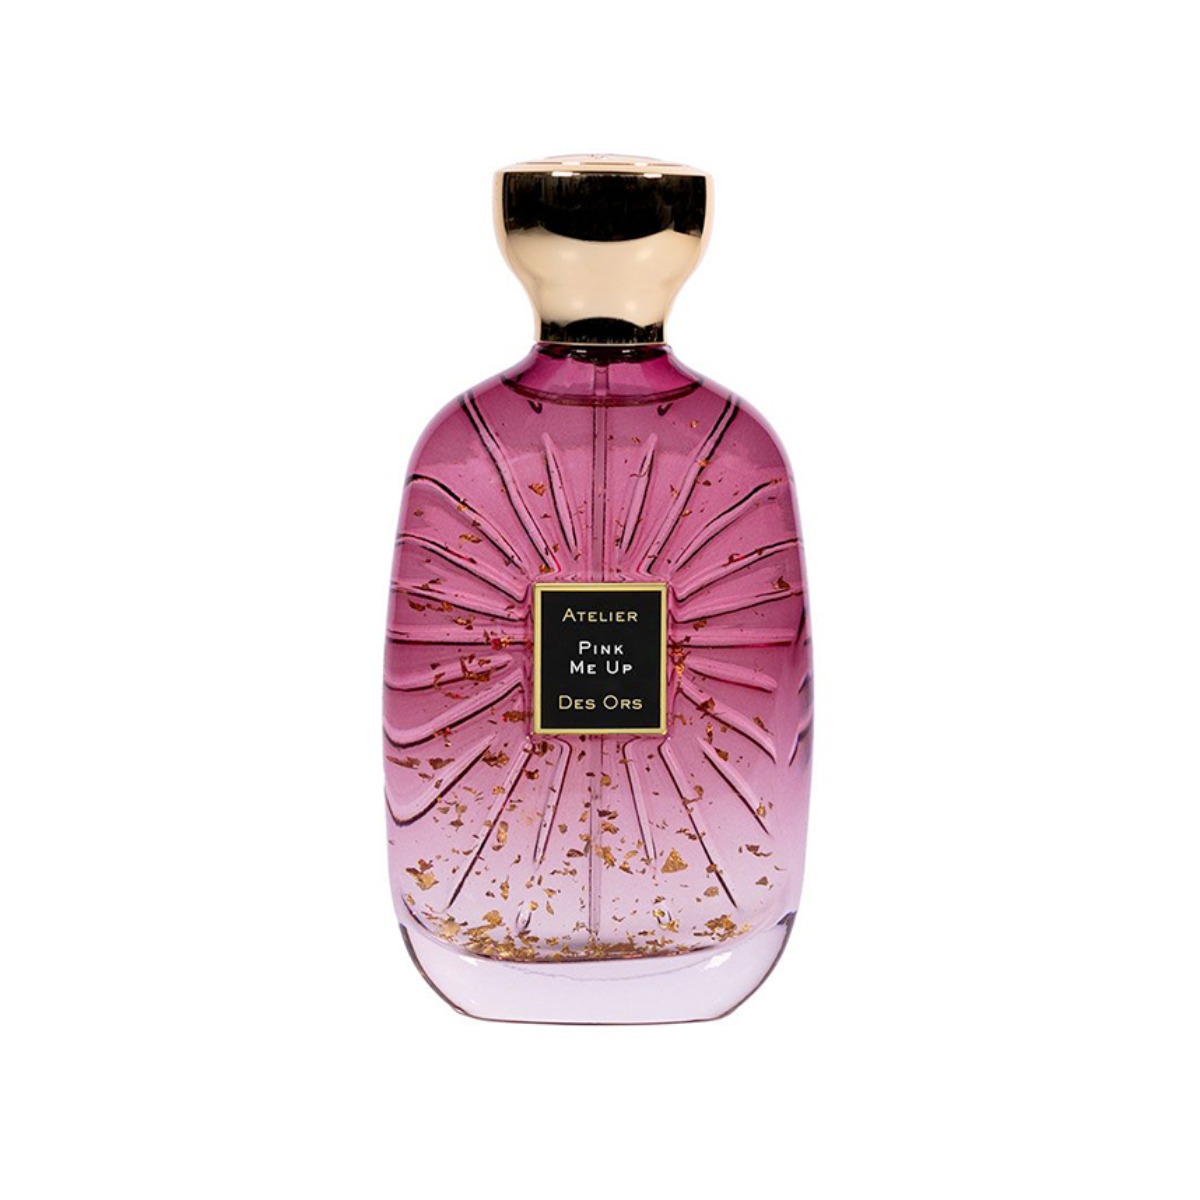 Atelier Des Ors Pink Me Up Eau de Parfum